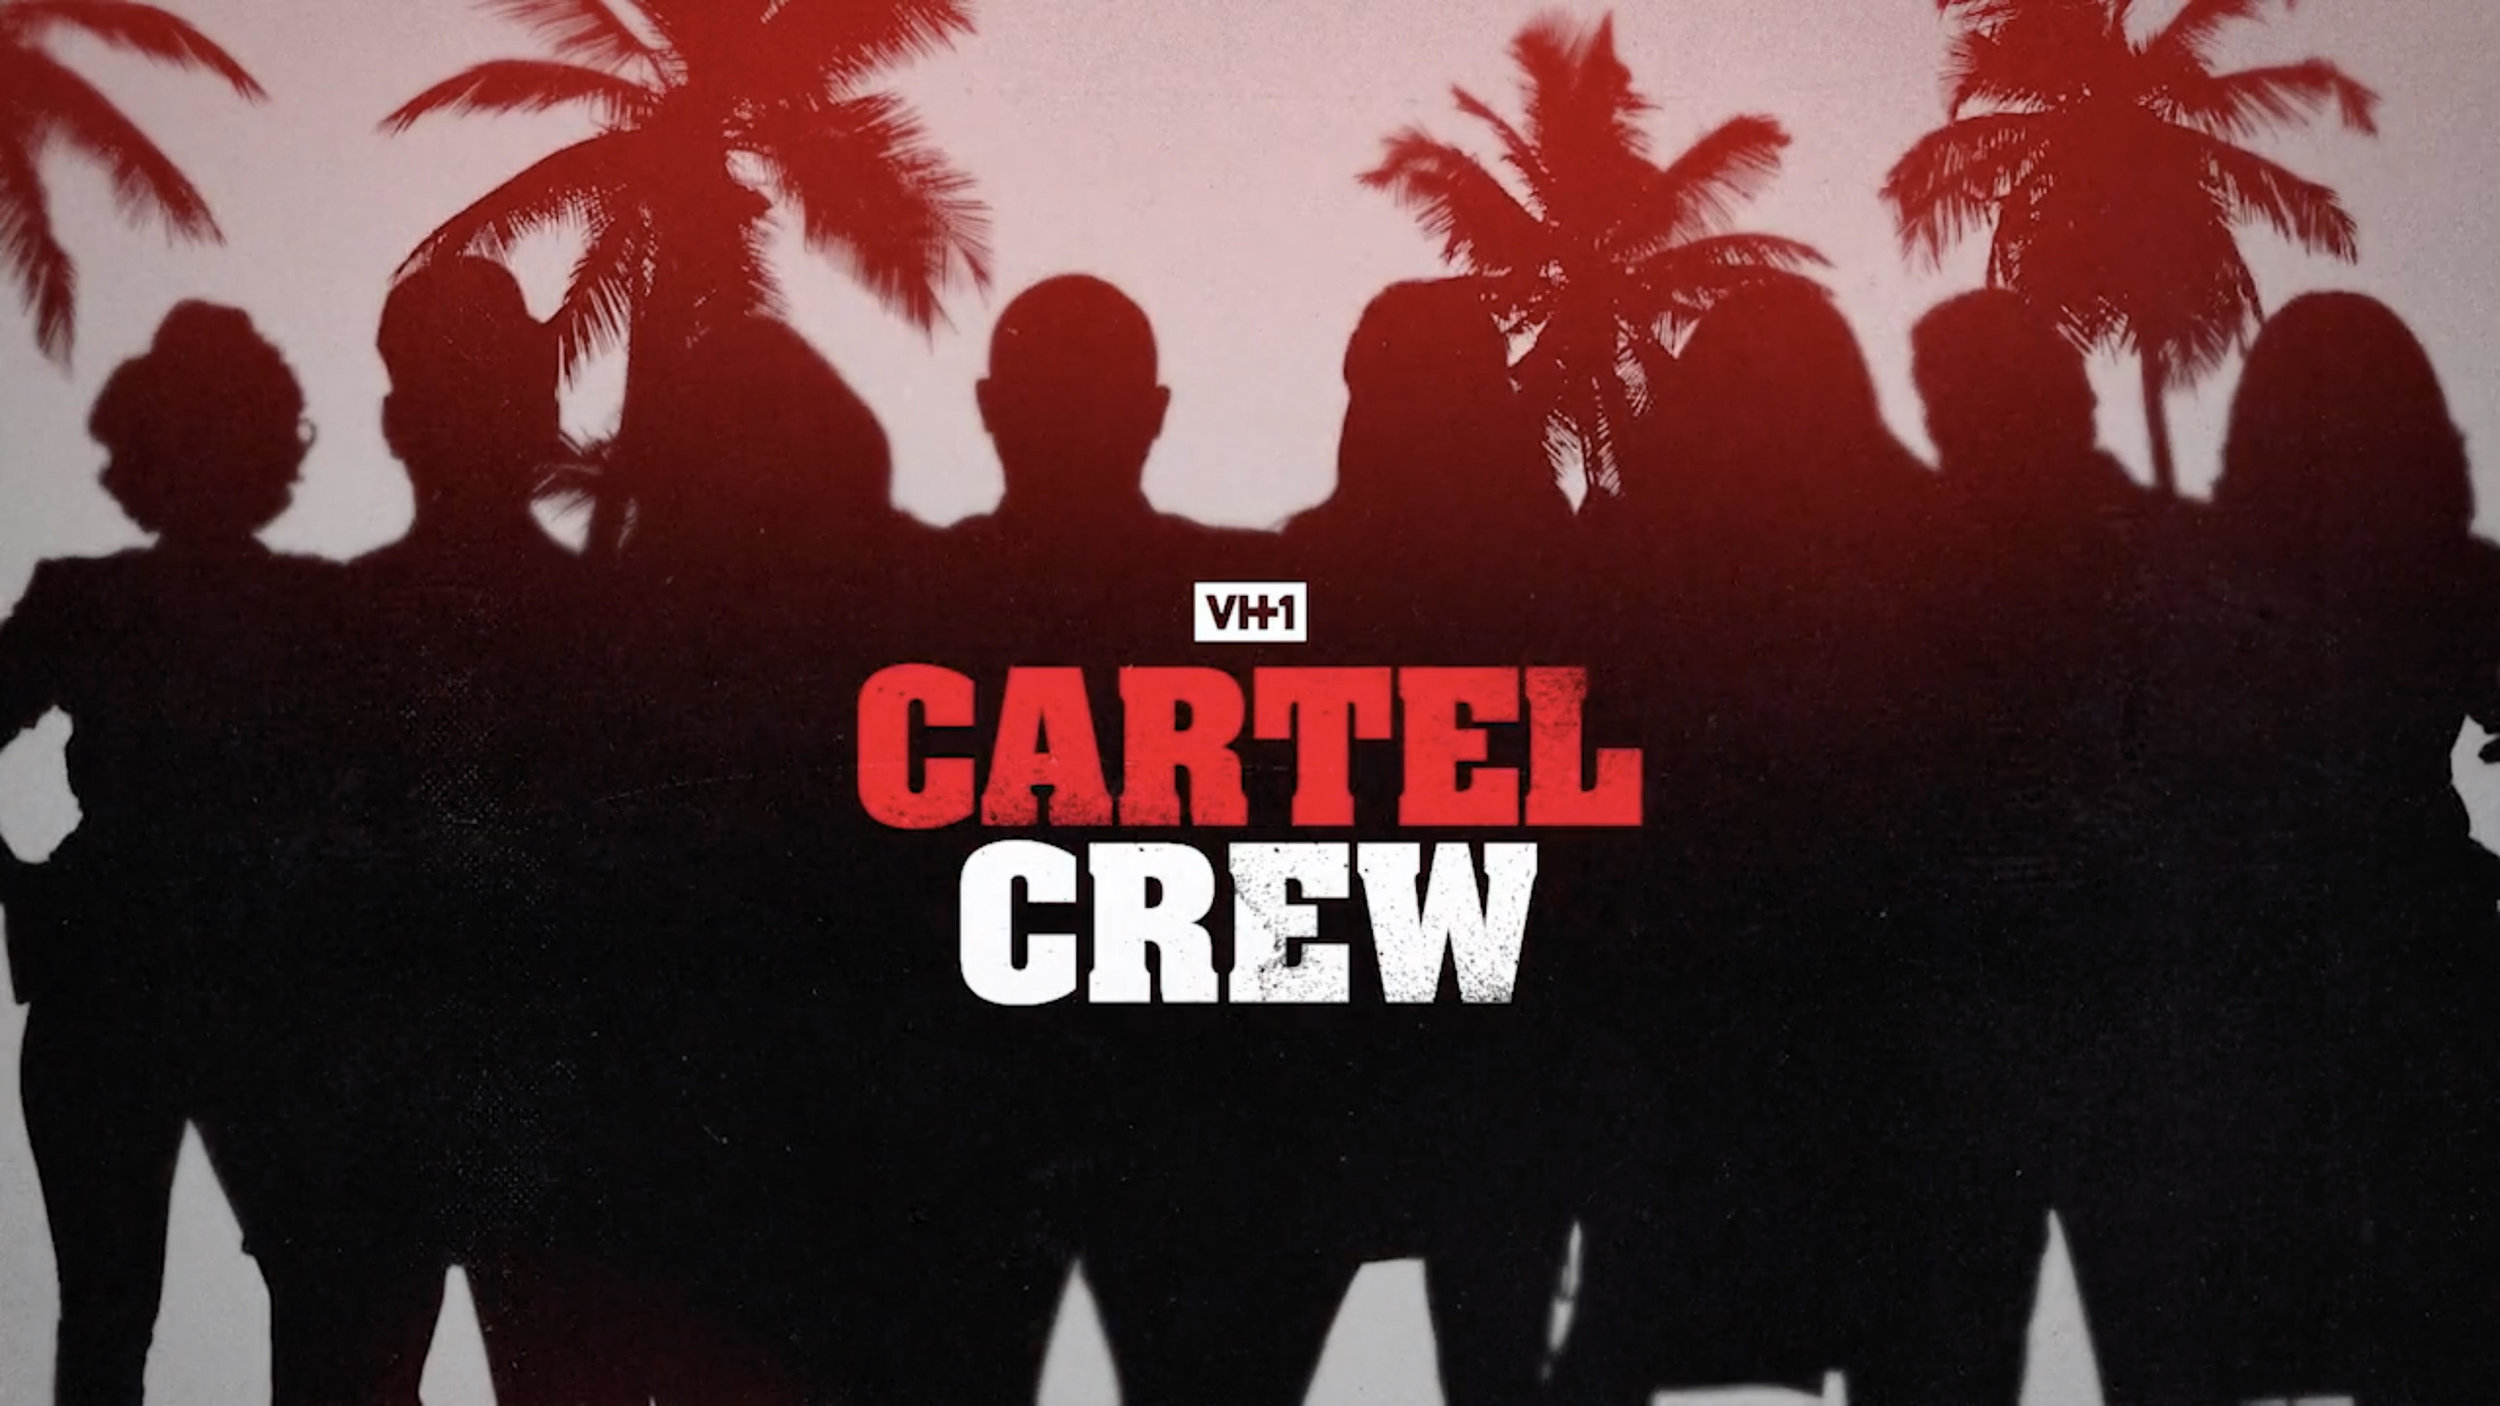 VH1 | CARTEL CREW SHOW OPENER